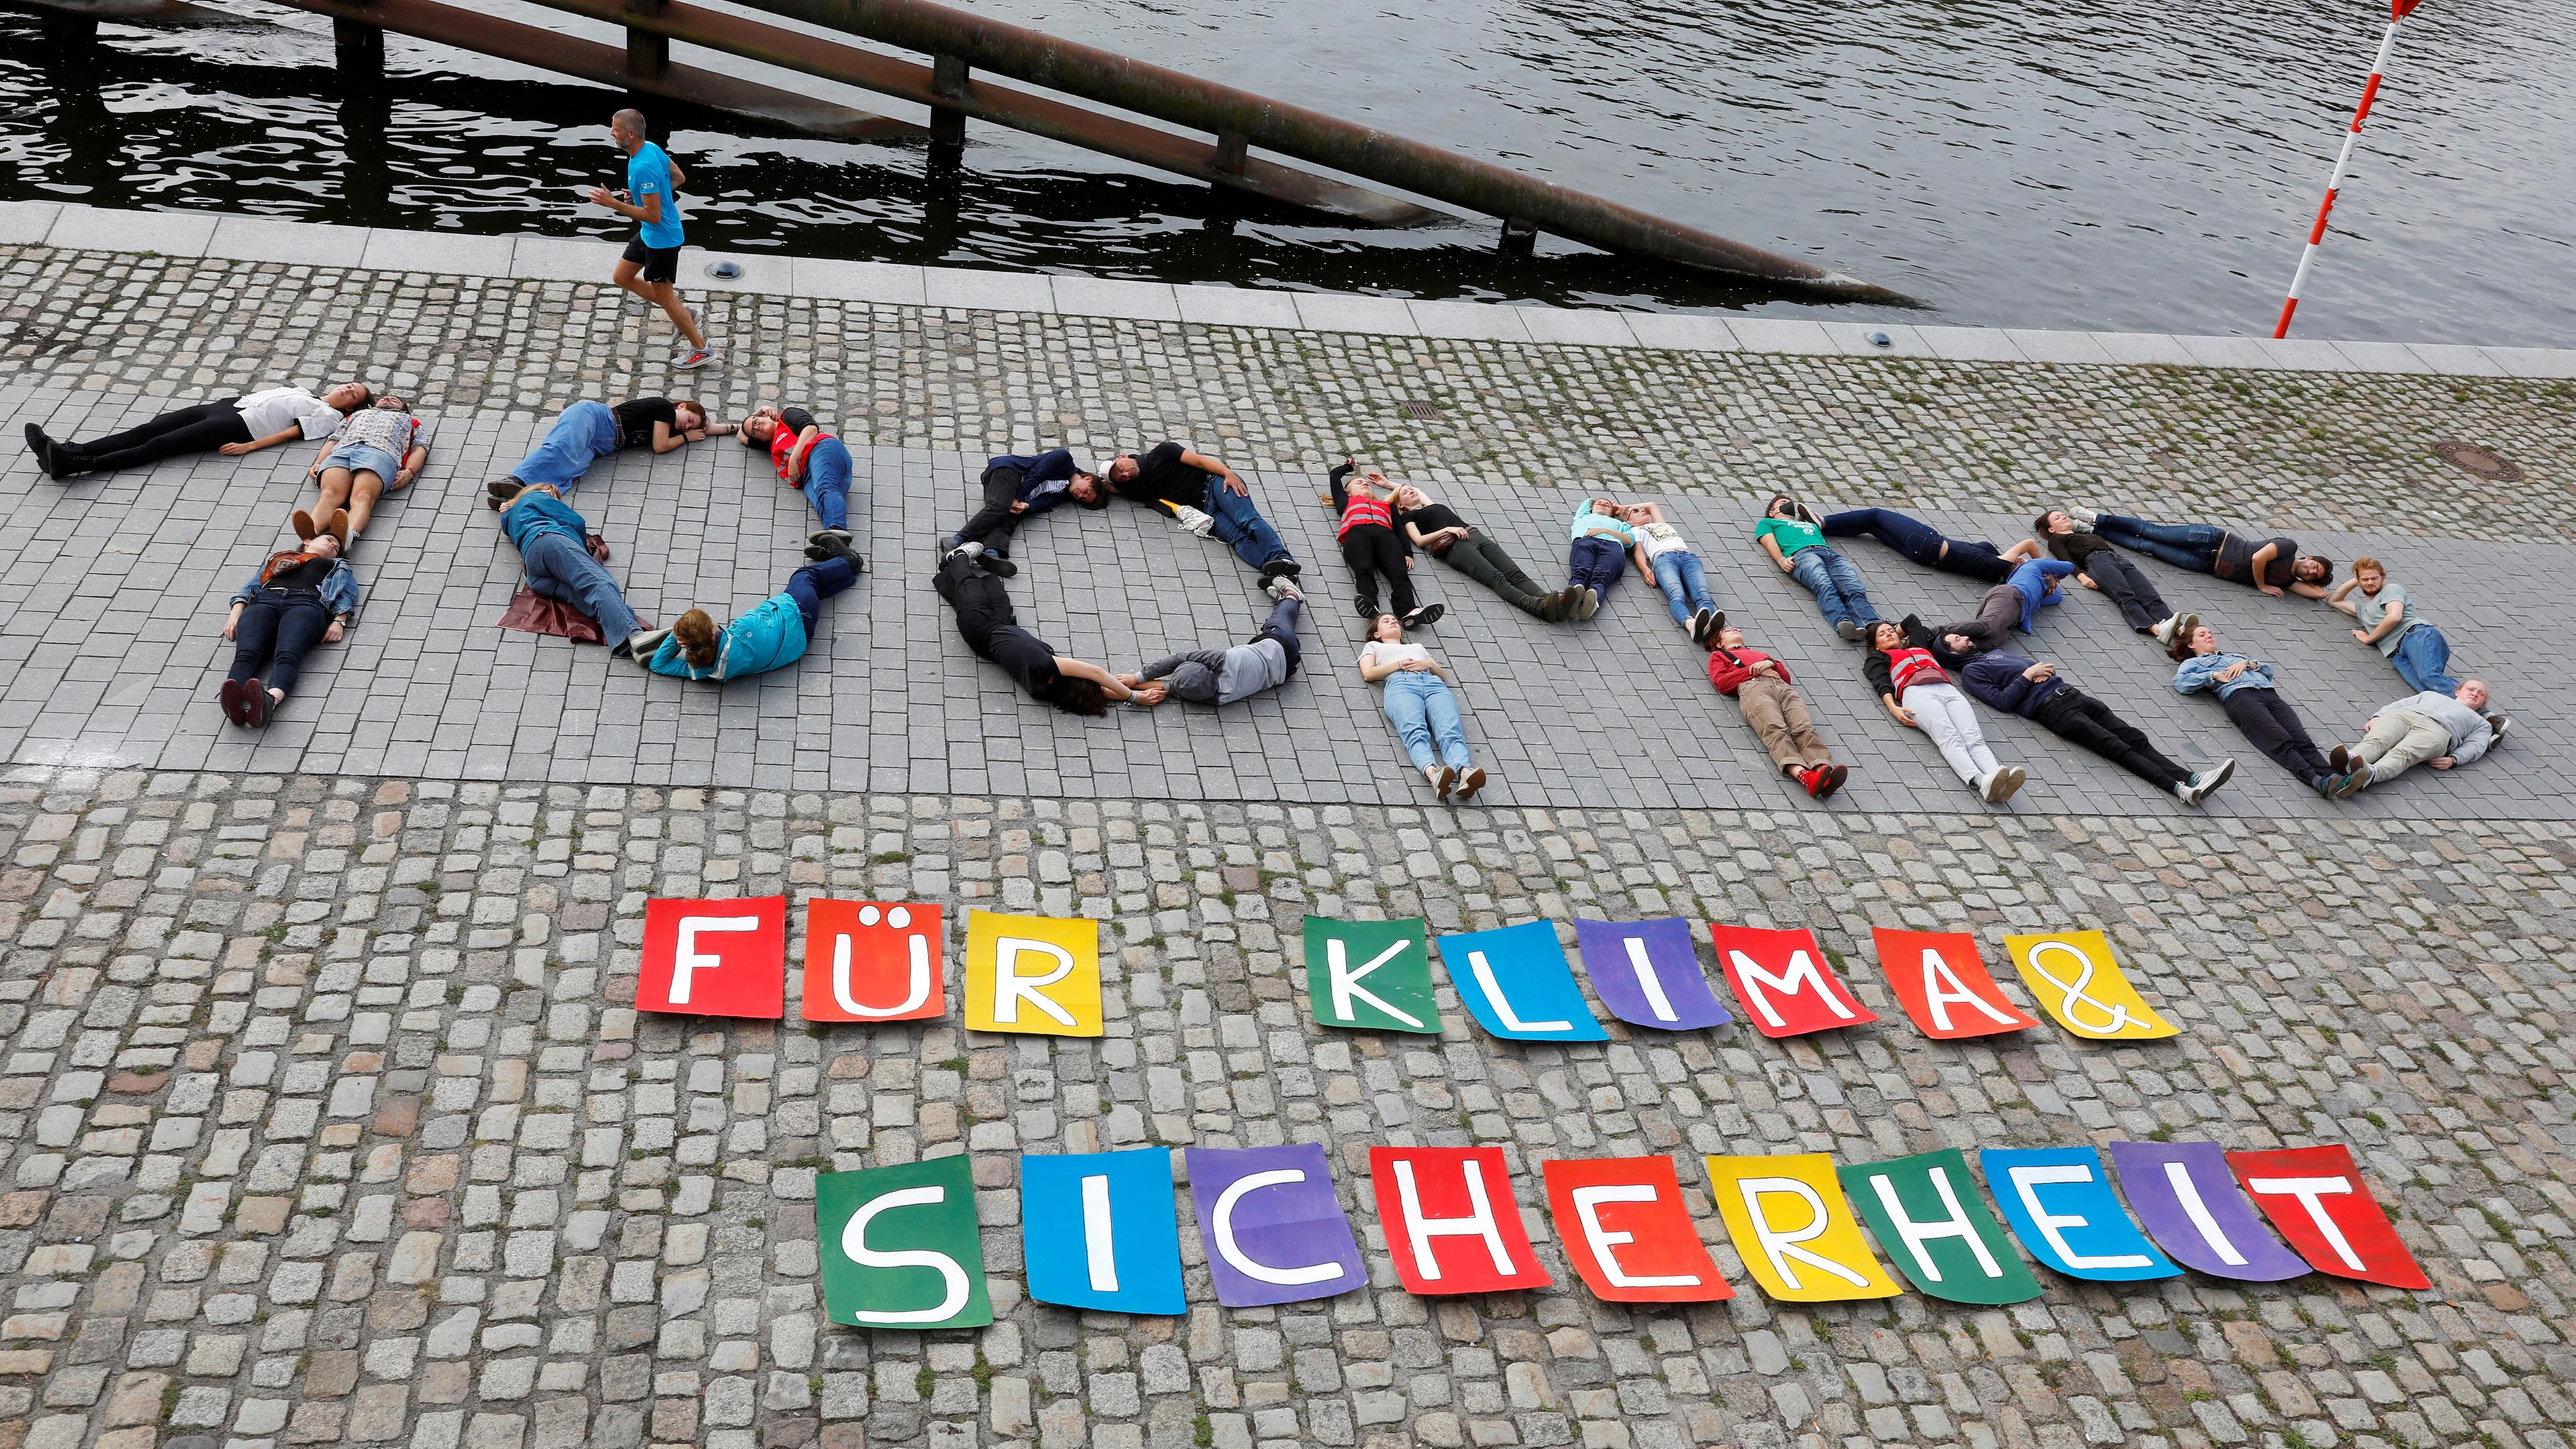 Berlin: "100 Mrd. für Klima und Sicherheit" schreiben Klimaaktivisten von fridays for future auf dem Boden neben die Spree.